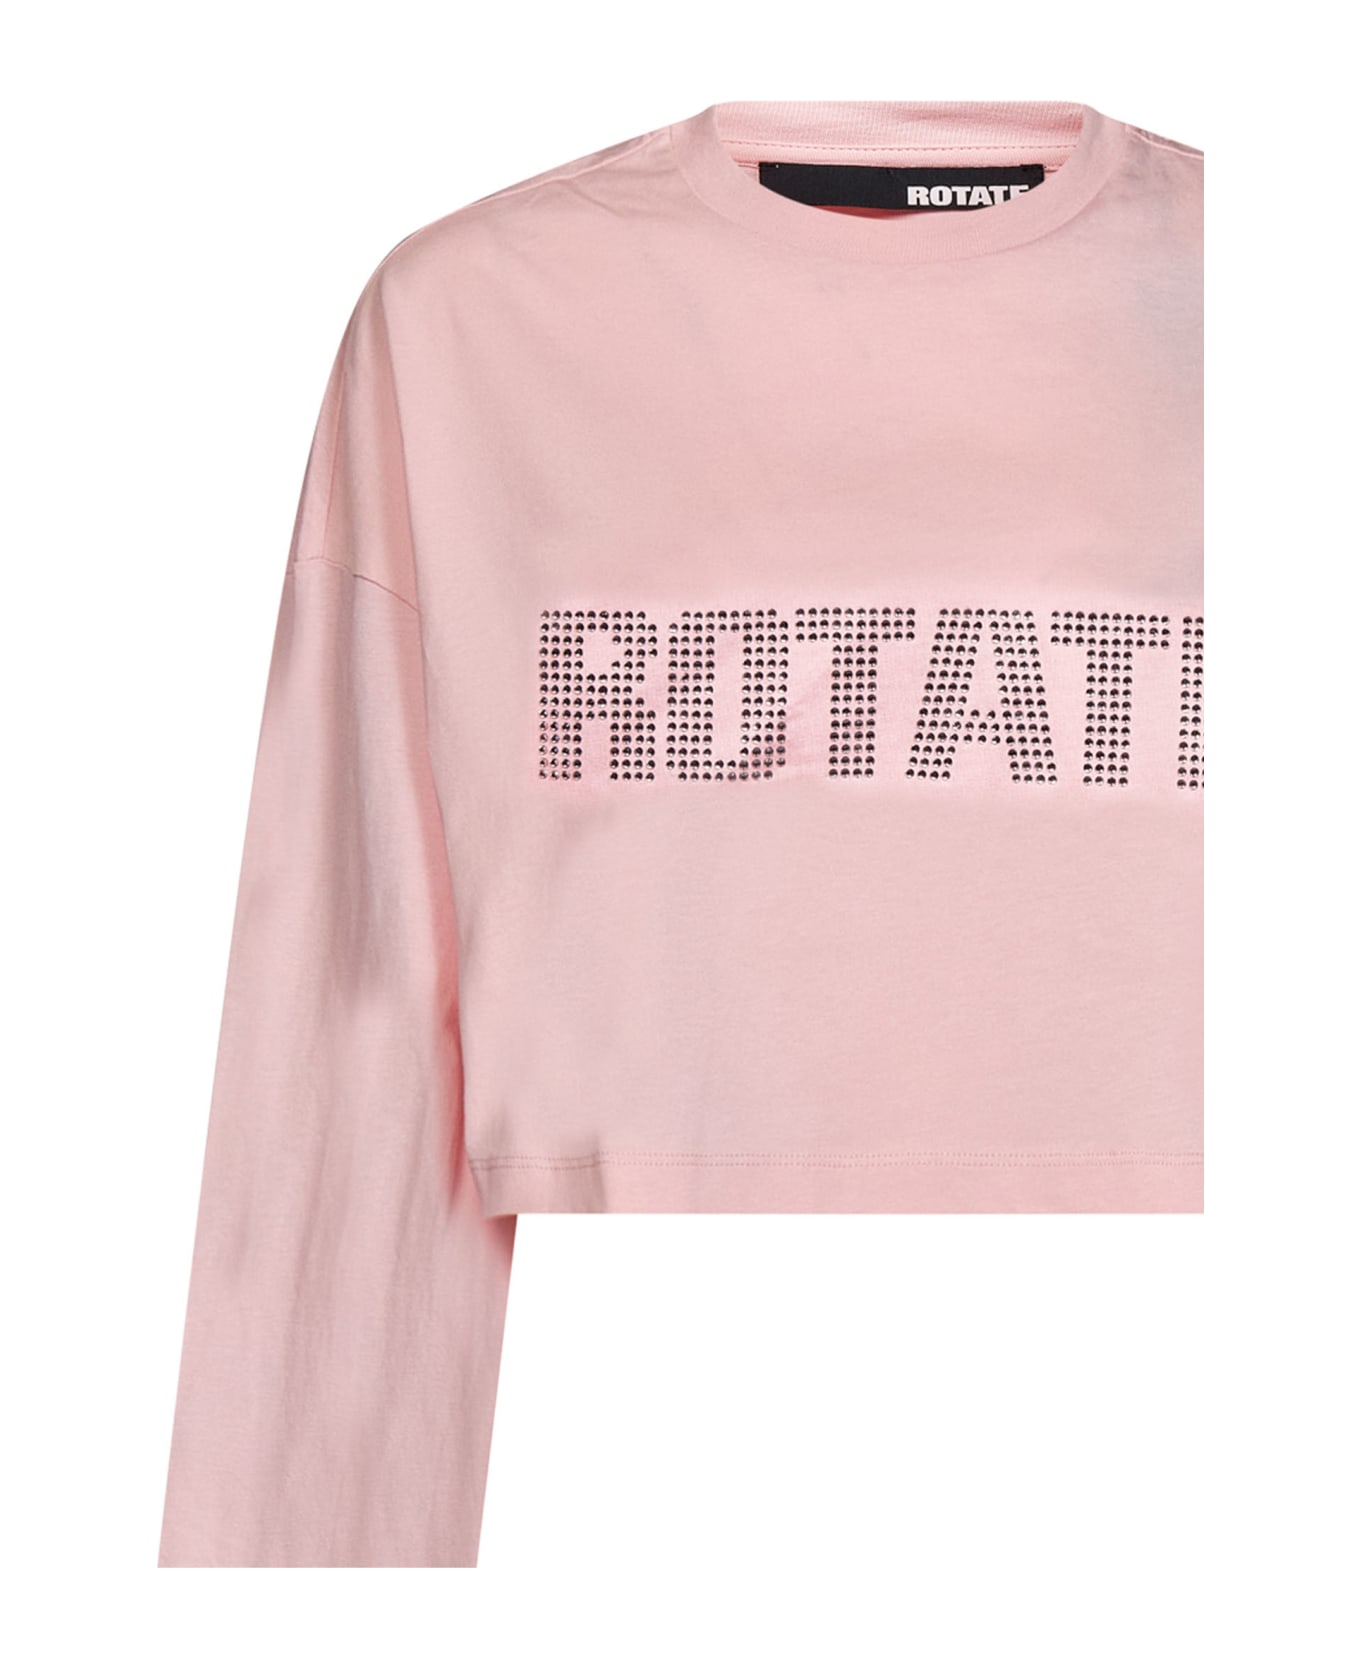 Rotate by Birger Christensen Rotate T-shirt - PINK